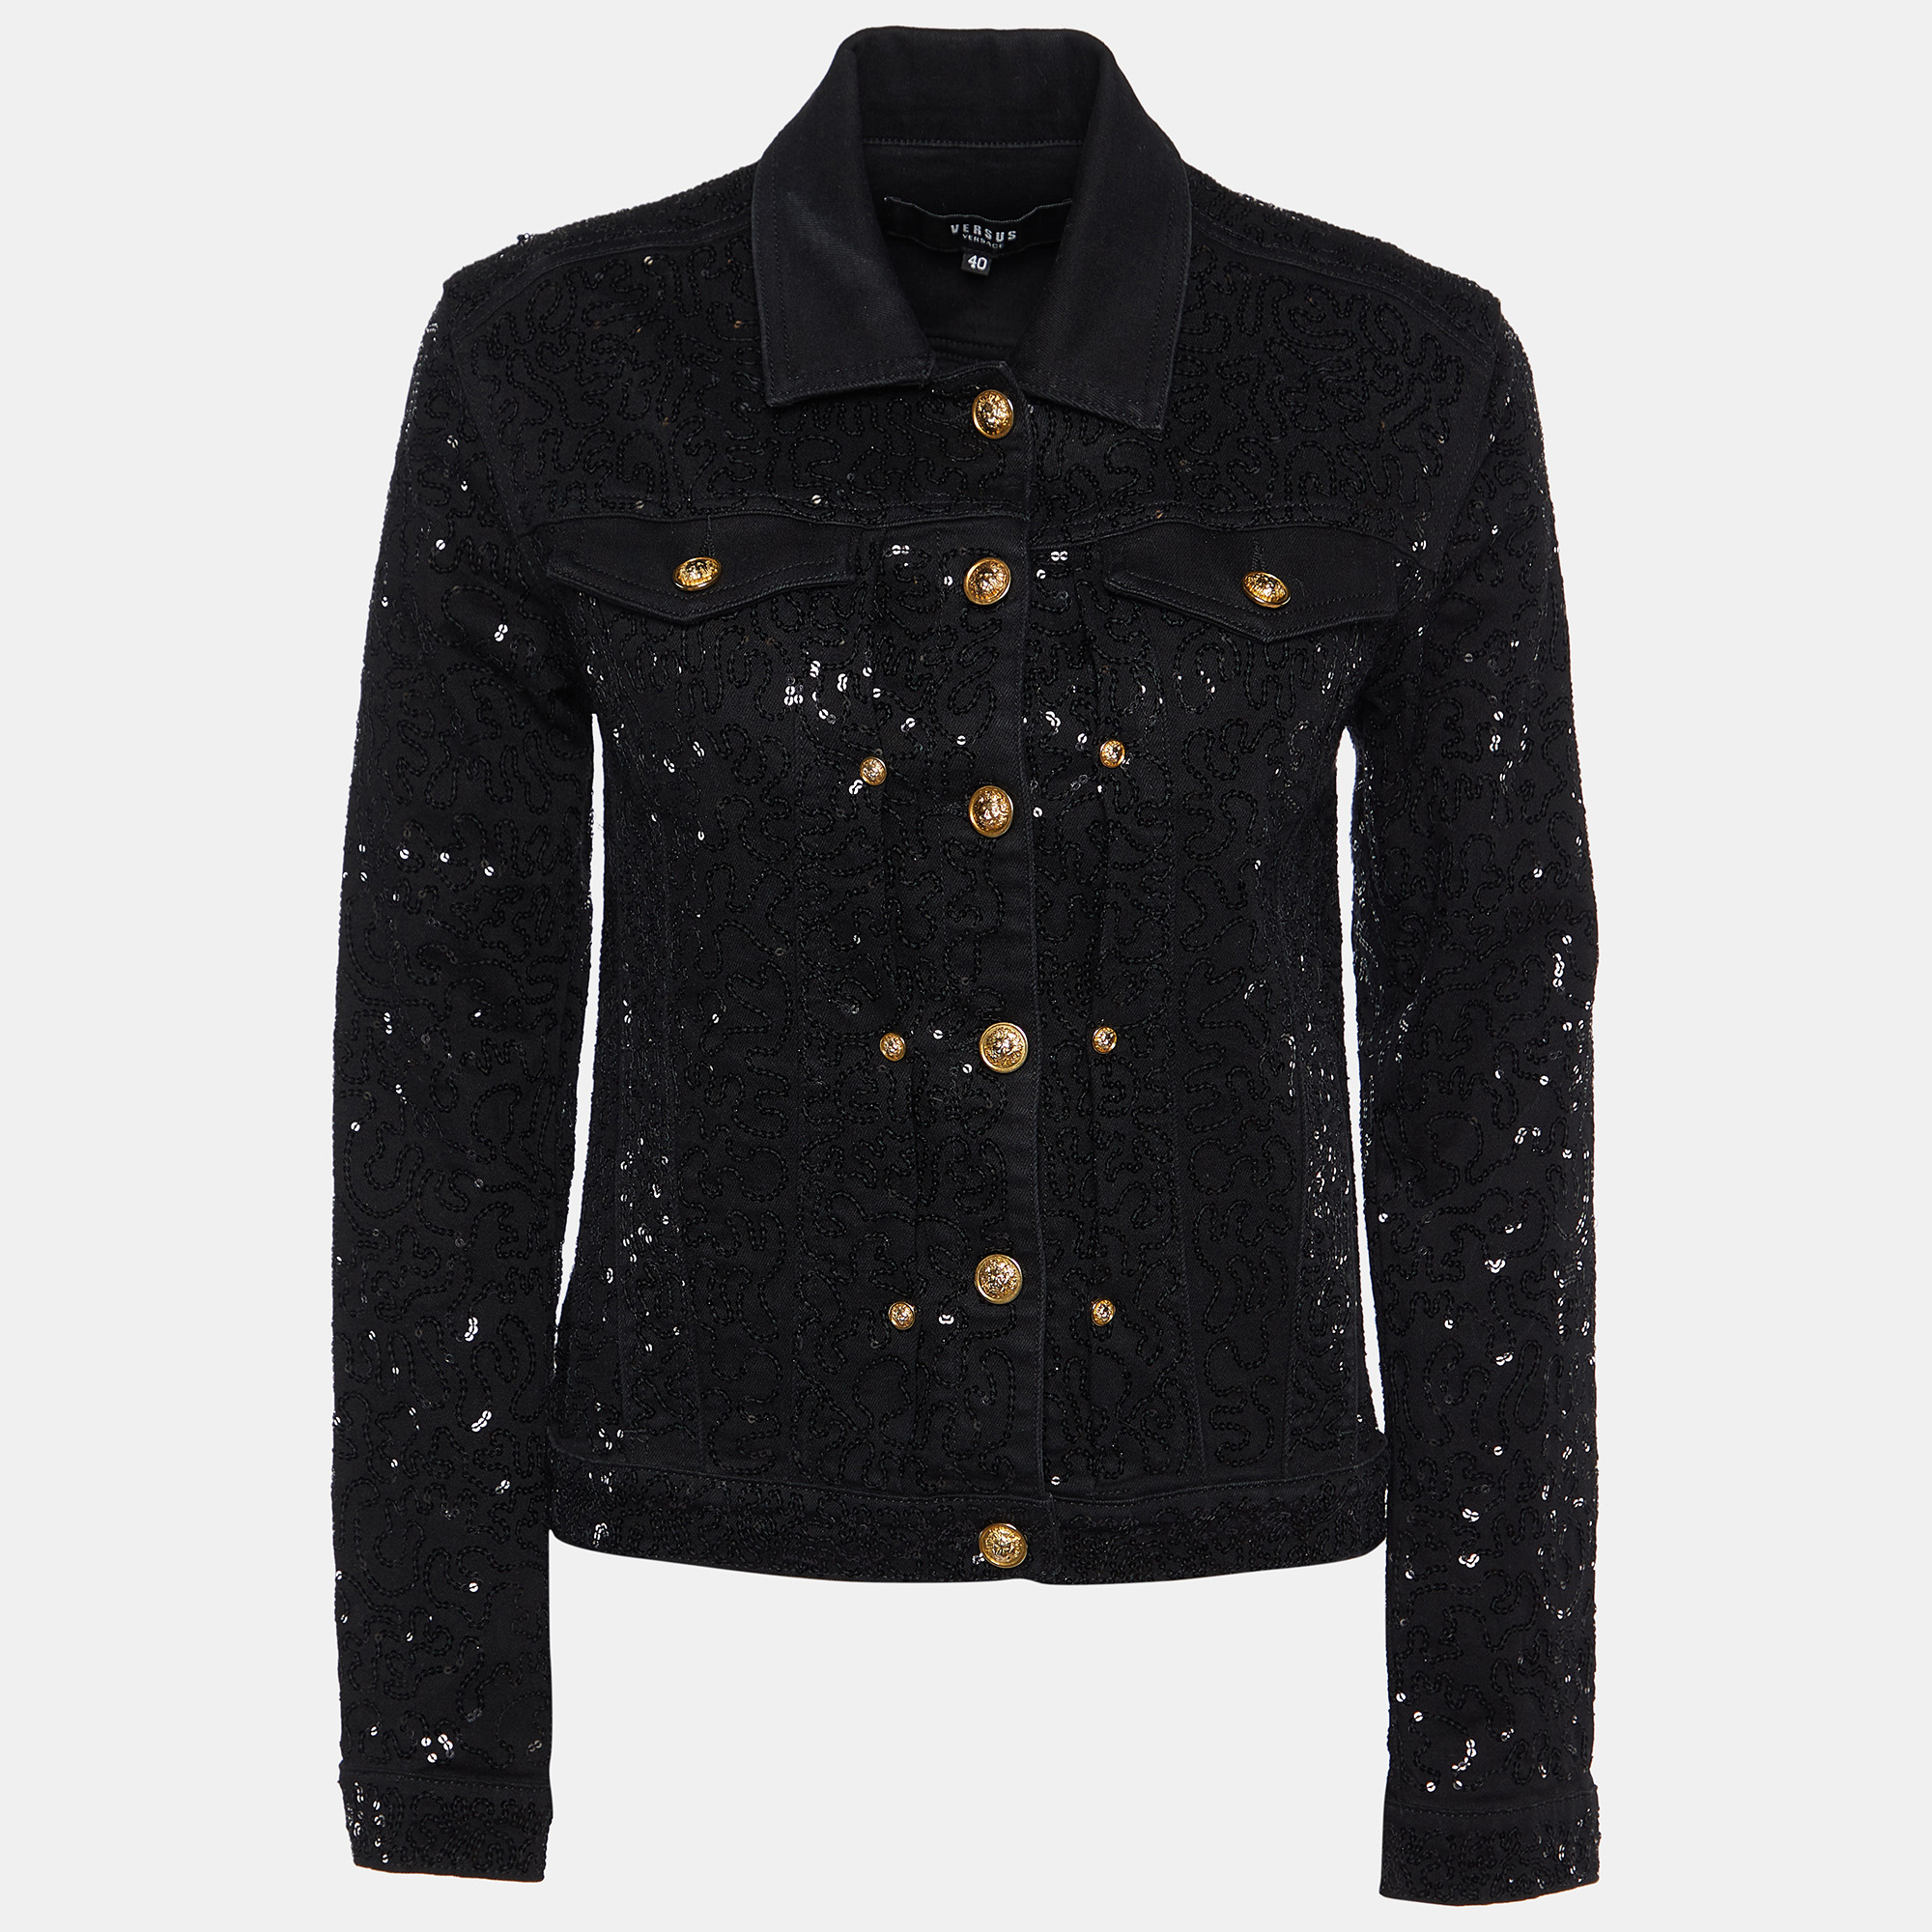 

Versus Versace Black Denim Sequined Jacket